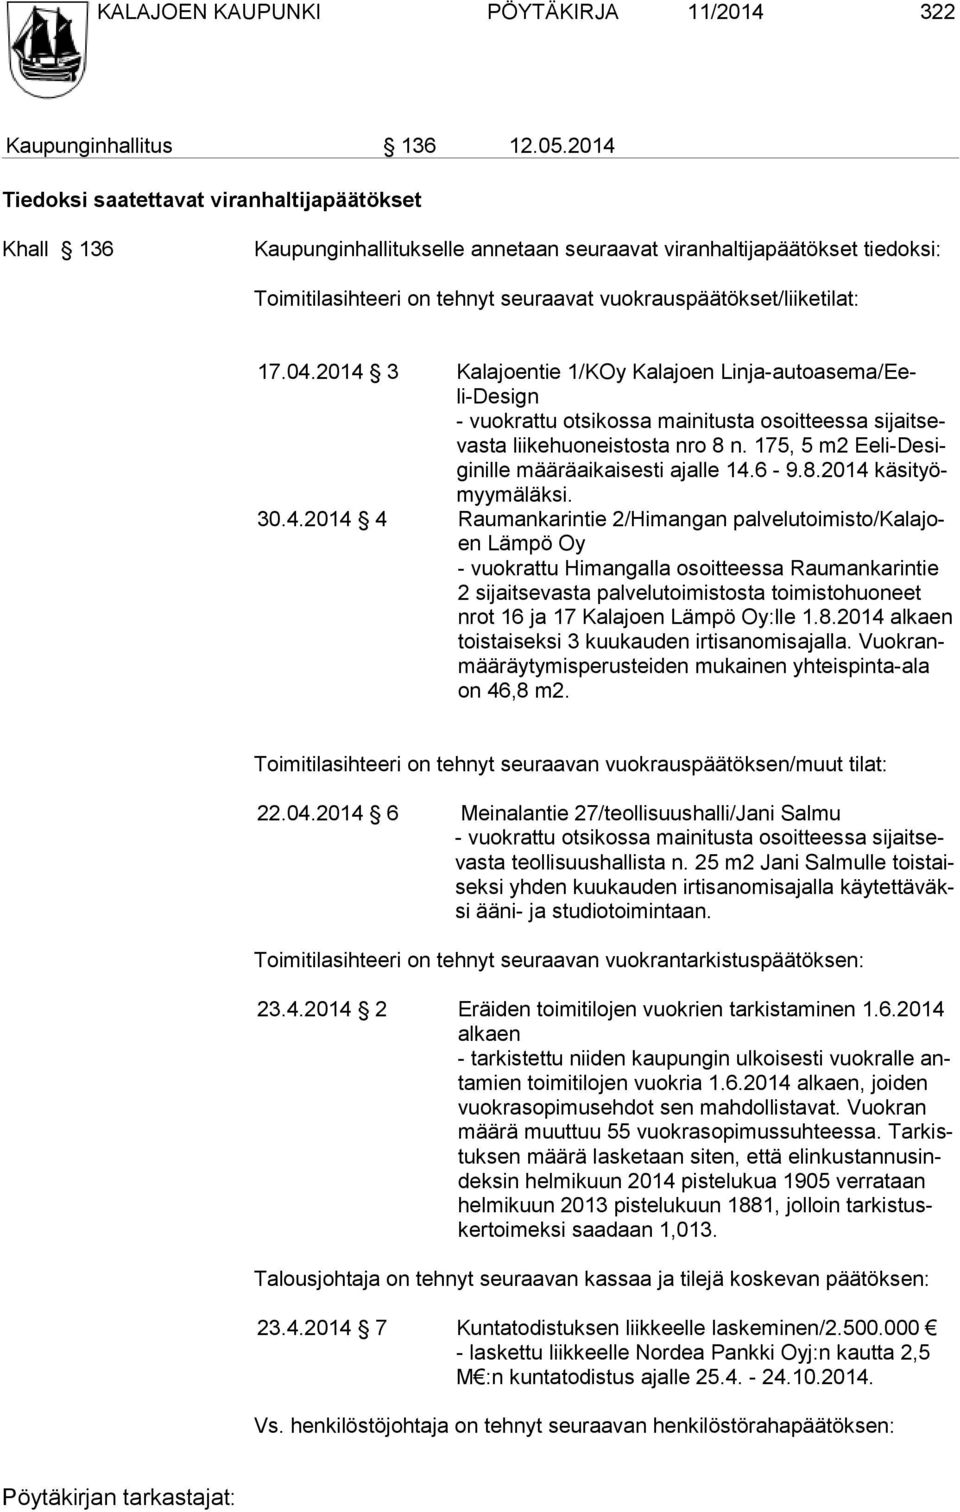 17.04.2014 3 Kalajoentie 1/KOy Kalajoen Linja-autoasema/Eeli-Design - vuokrattu otsikossa mainitusta osoitteessa sijaitsevasta liike huoneistosta nro 8 n.